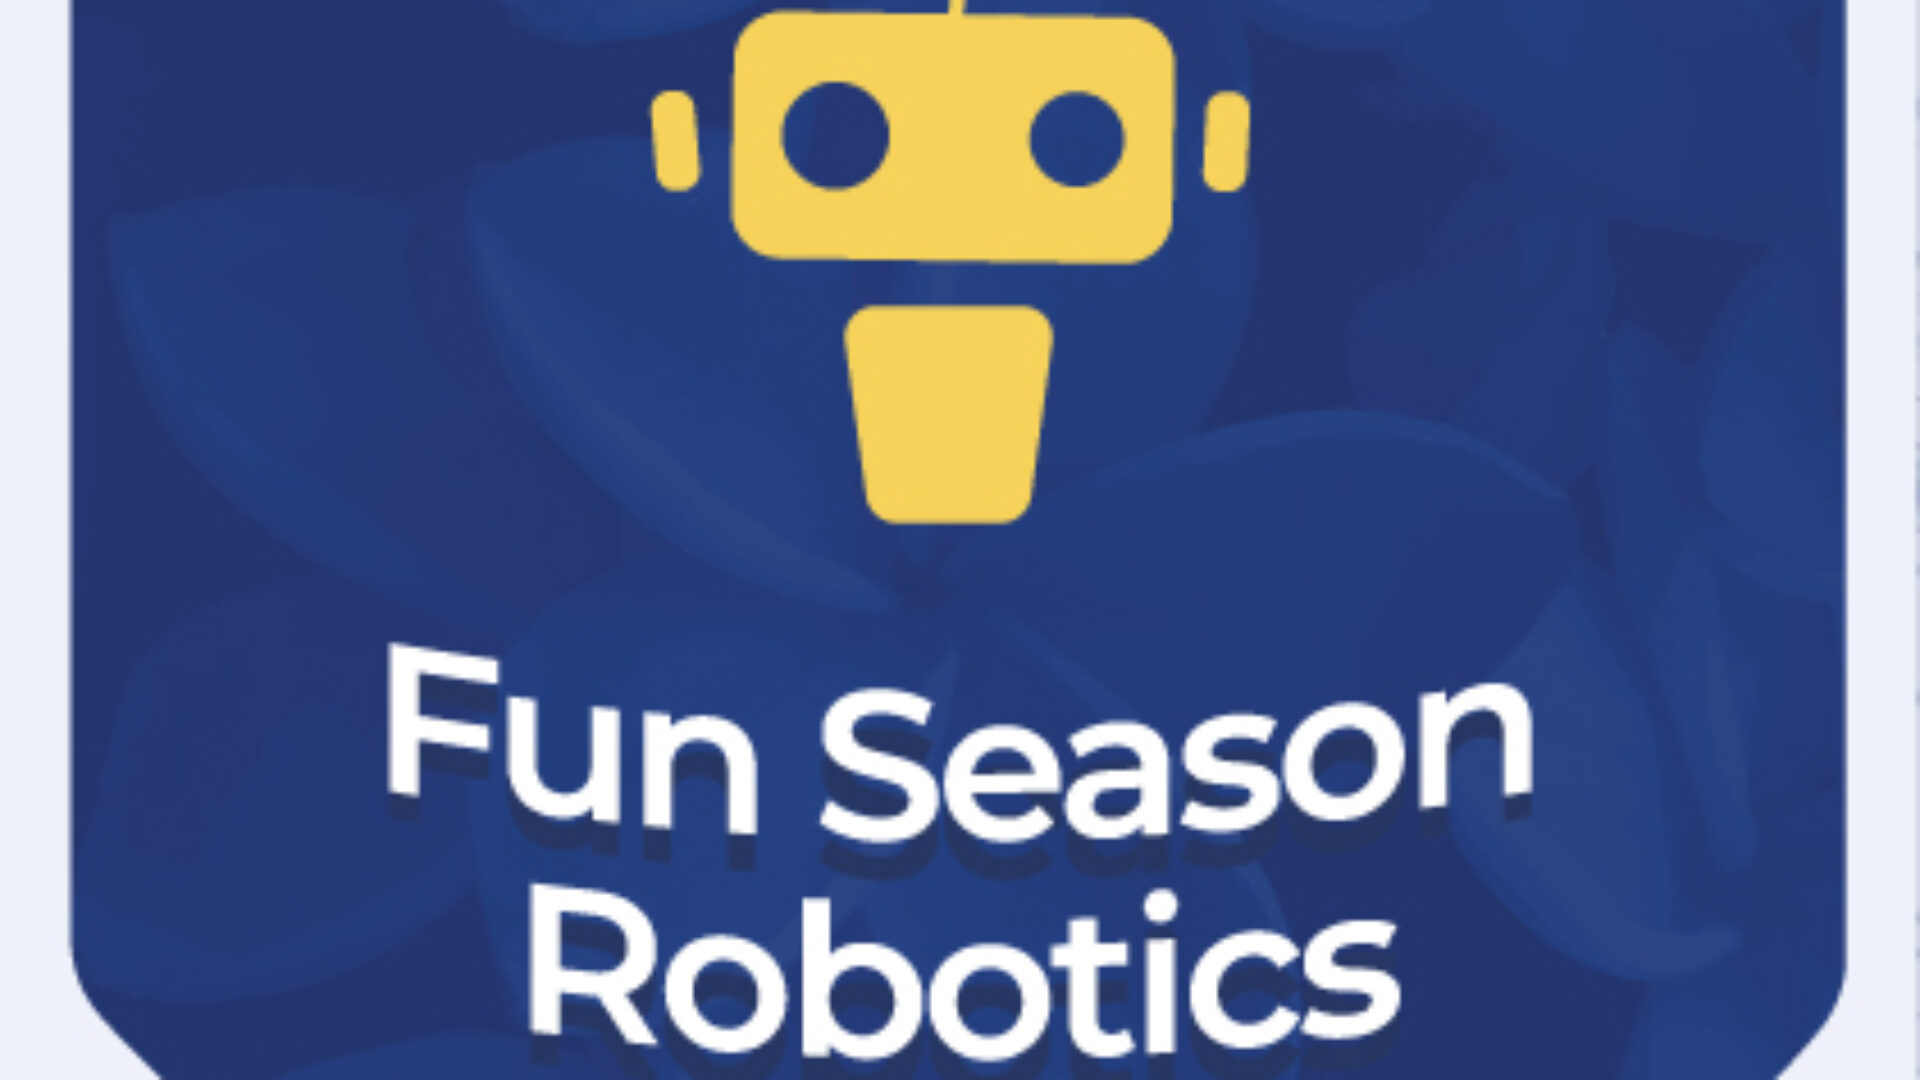 Fun Season Robotics